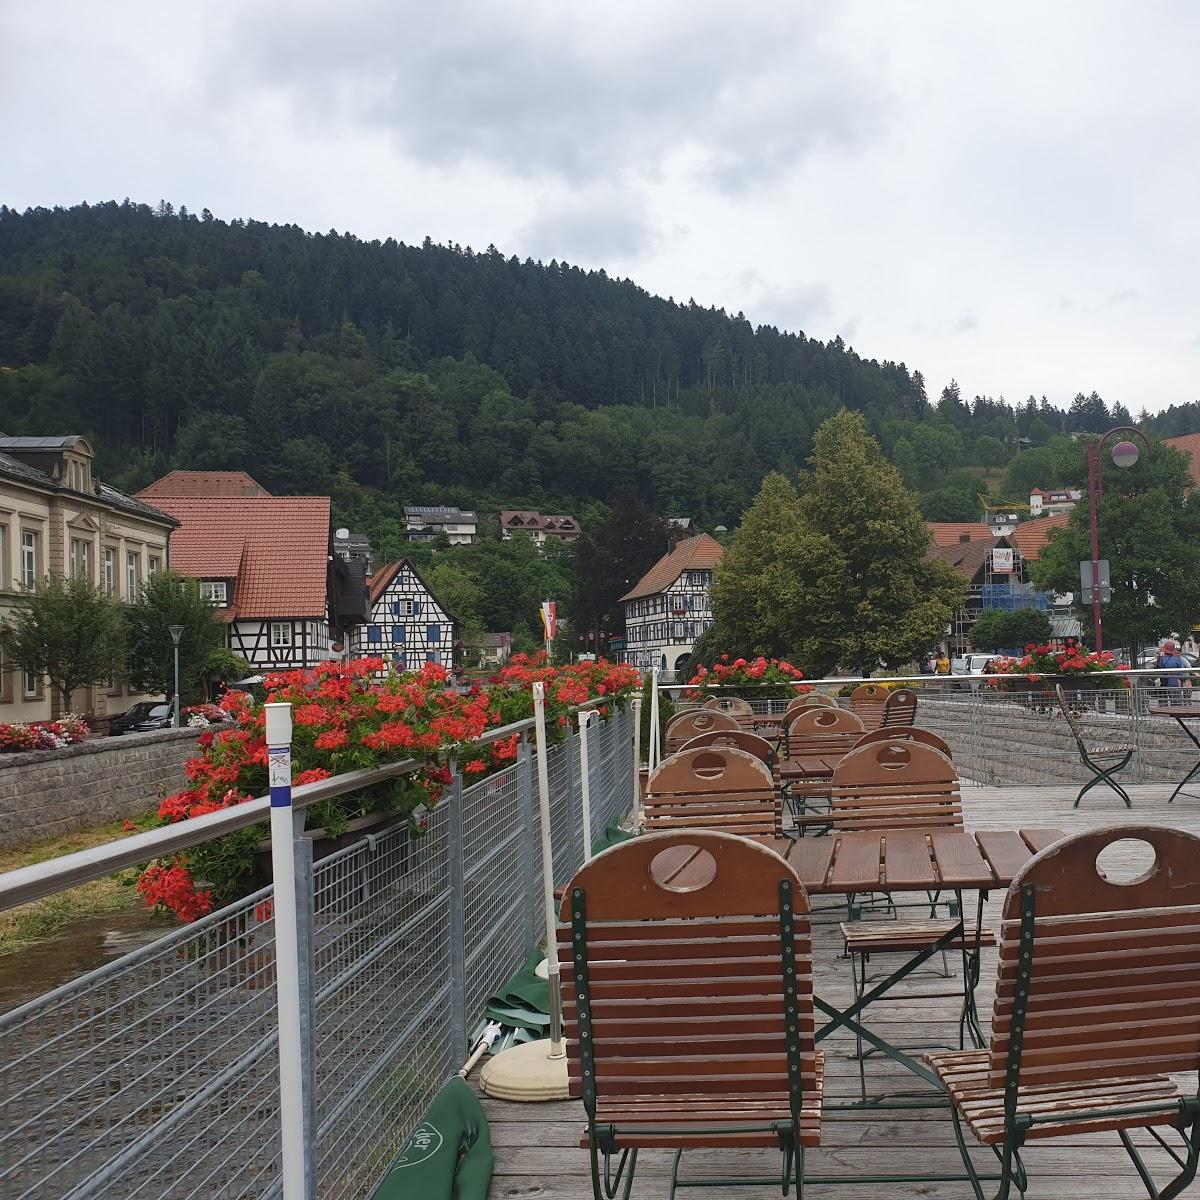 Restaurant "Gasthof zum weyßen Rößle zu" in  Schiltach